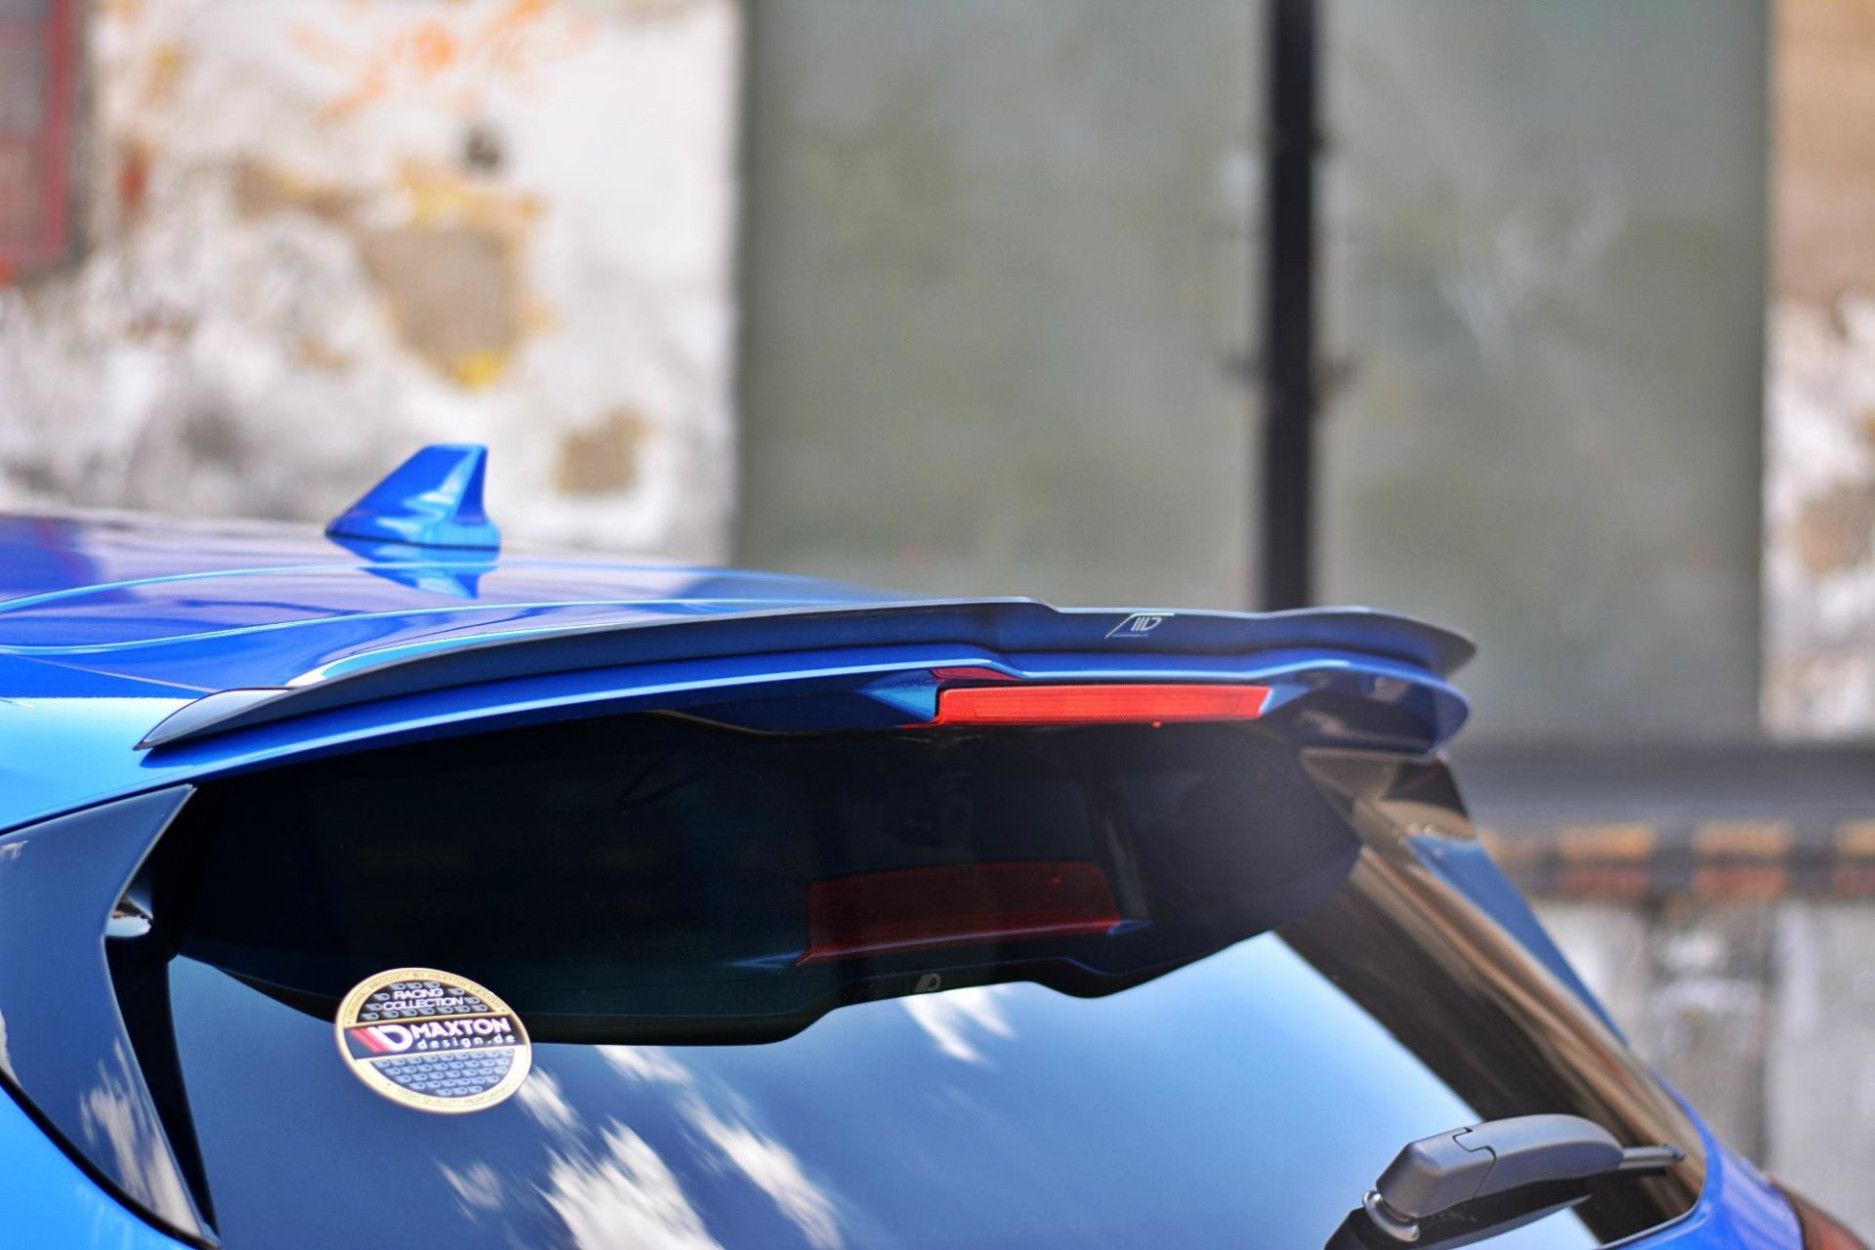 Maxtondesign Frontlippe für Ford Focus MK4 ST|ST-Line Racing schwarz